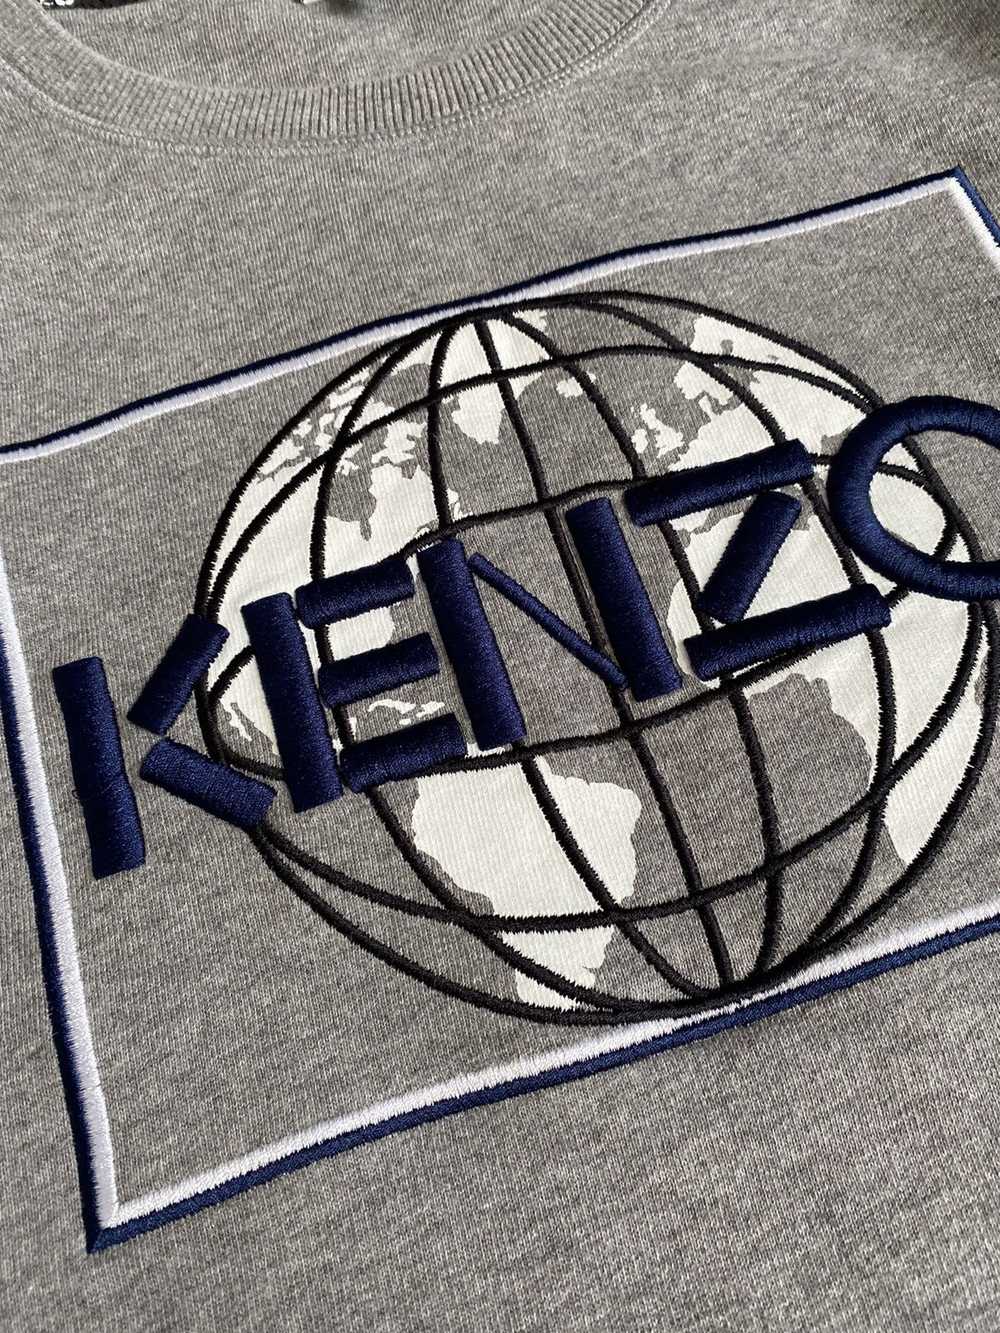 Kenzo × Luxury Kenzo W’s Earth Logo crew Sweatshi… - image 4